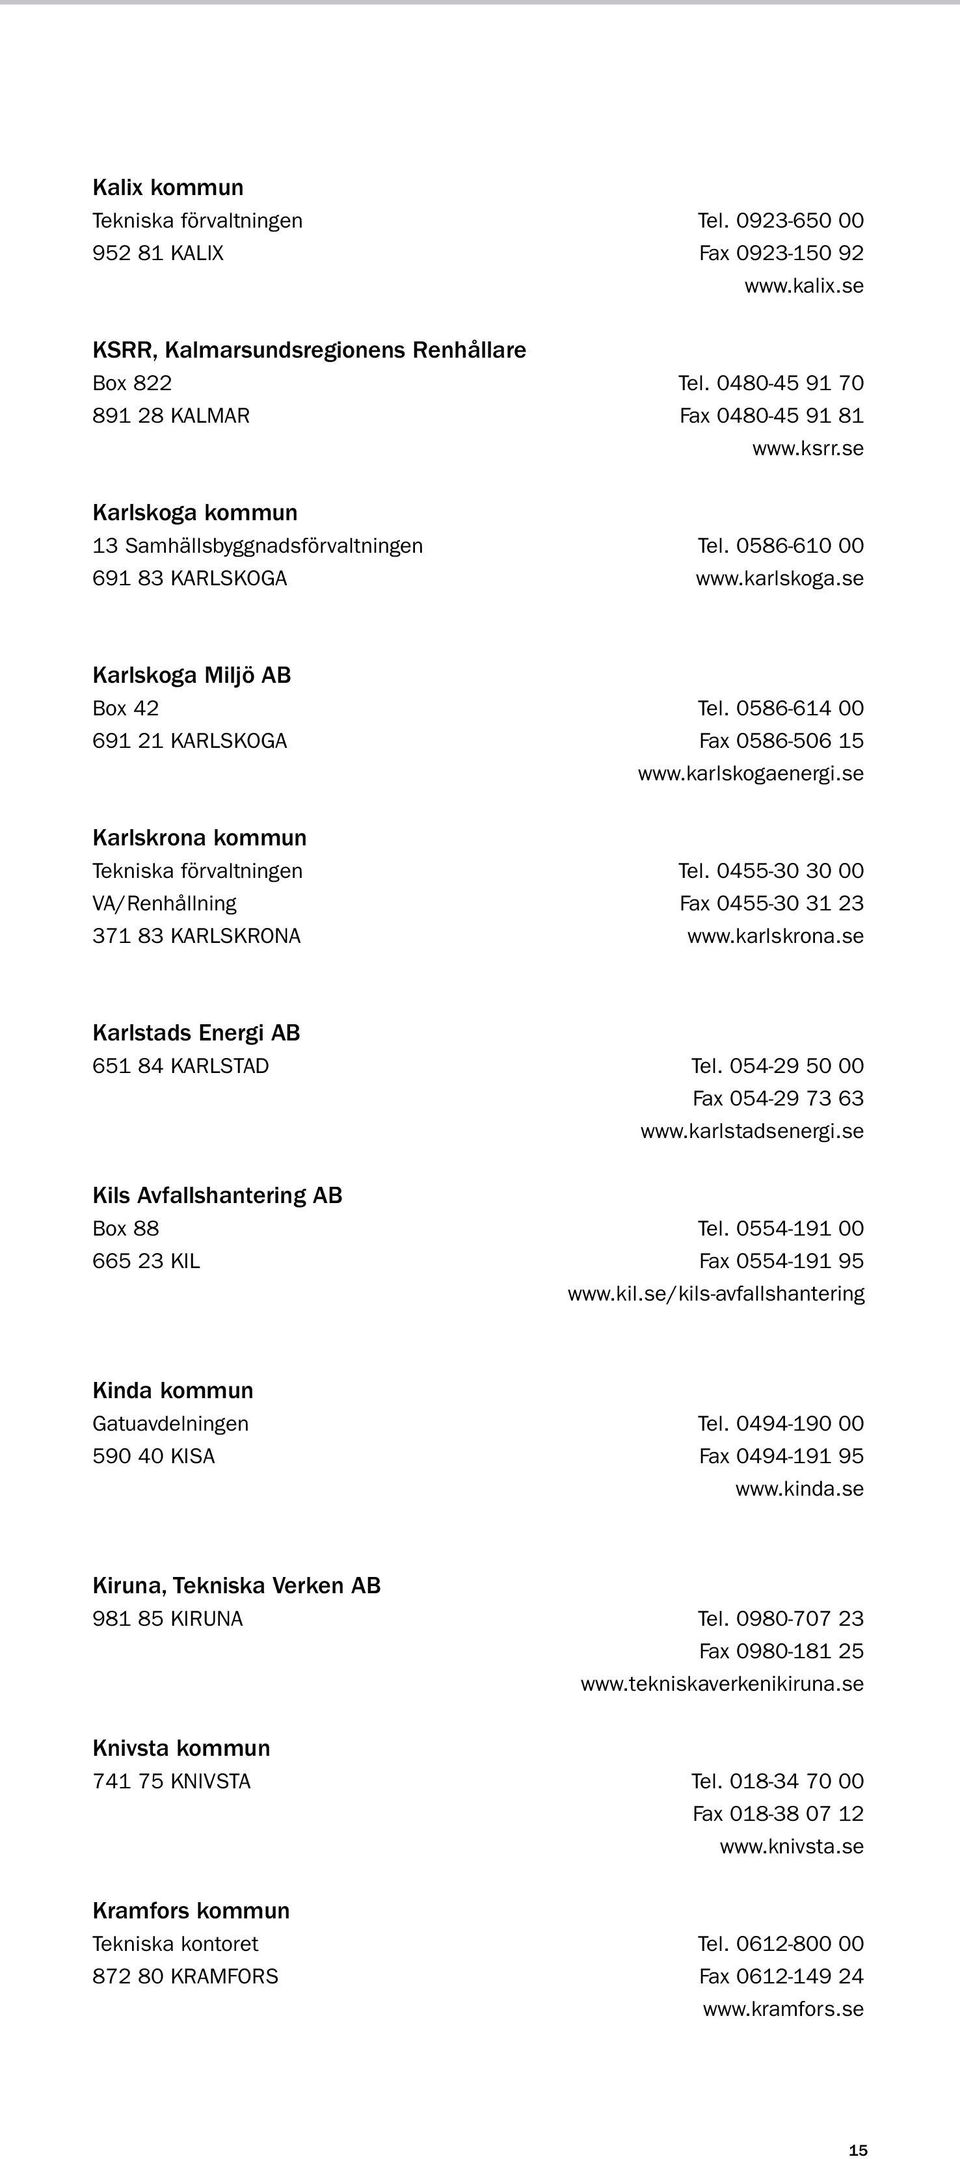 karlskogaenergi.se Karlskrona kommun Tekniska förvaltningen tel. 0455-30 30 00 VA/Renhållning fax 0455-30 31 23 371 83 KARLSKRONA www.karlskrona.se Karlstads Energi AB 651 84 KARLSTAD tel.